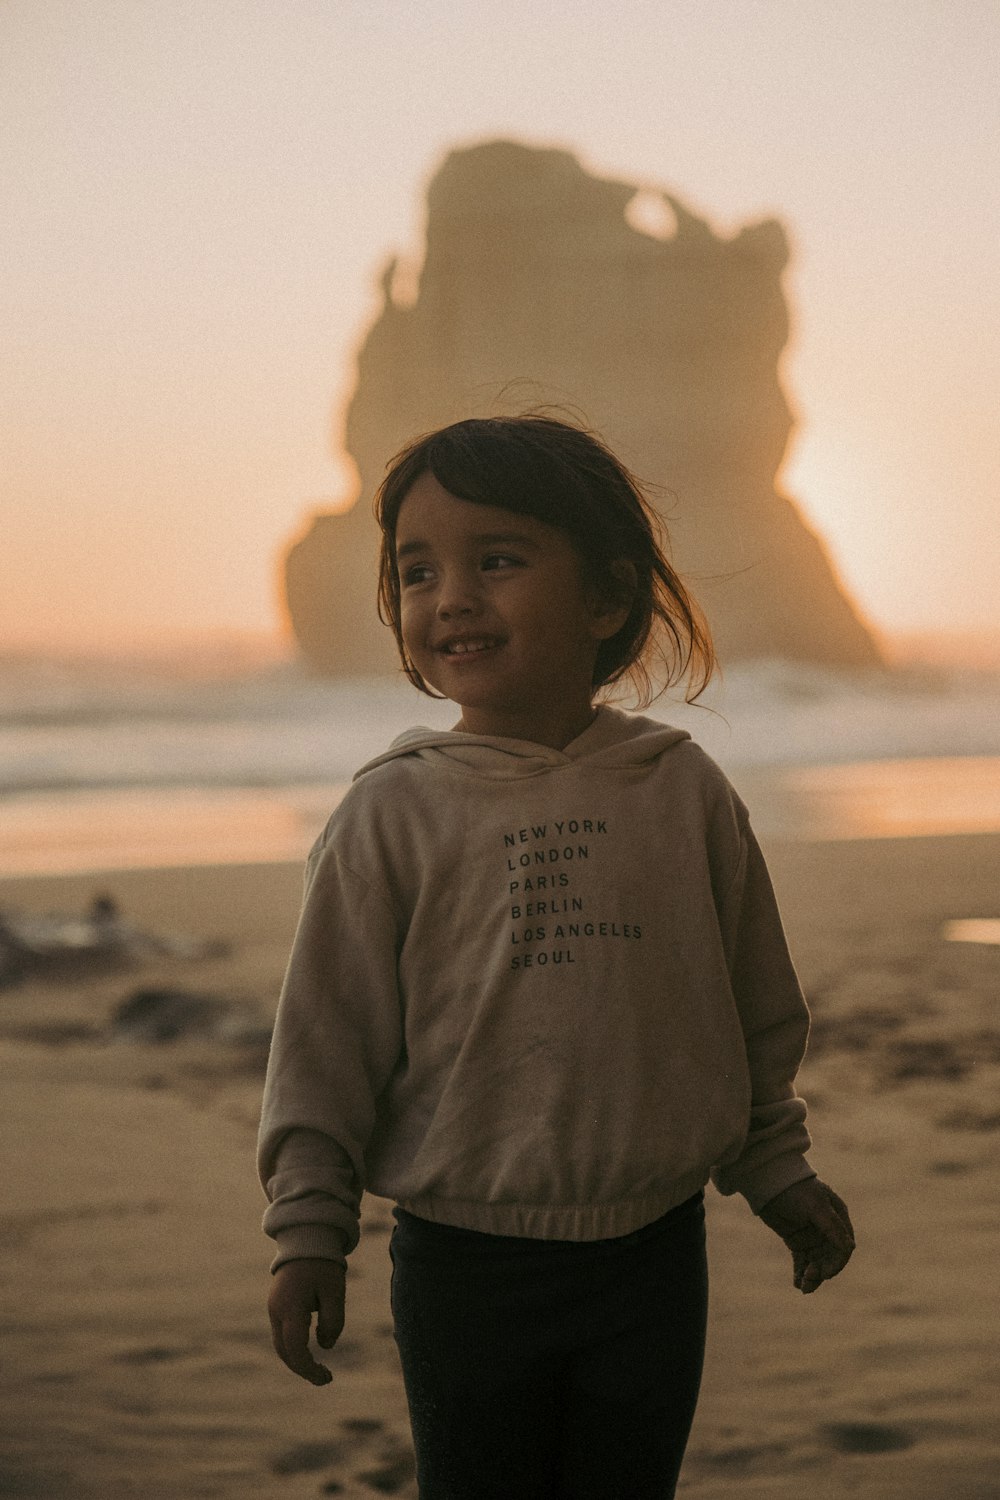 a little girl standing on top of a sandy beach